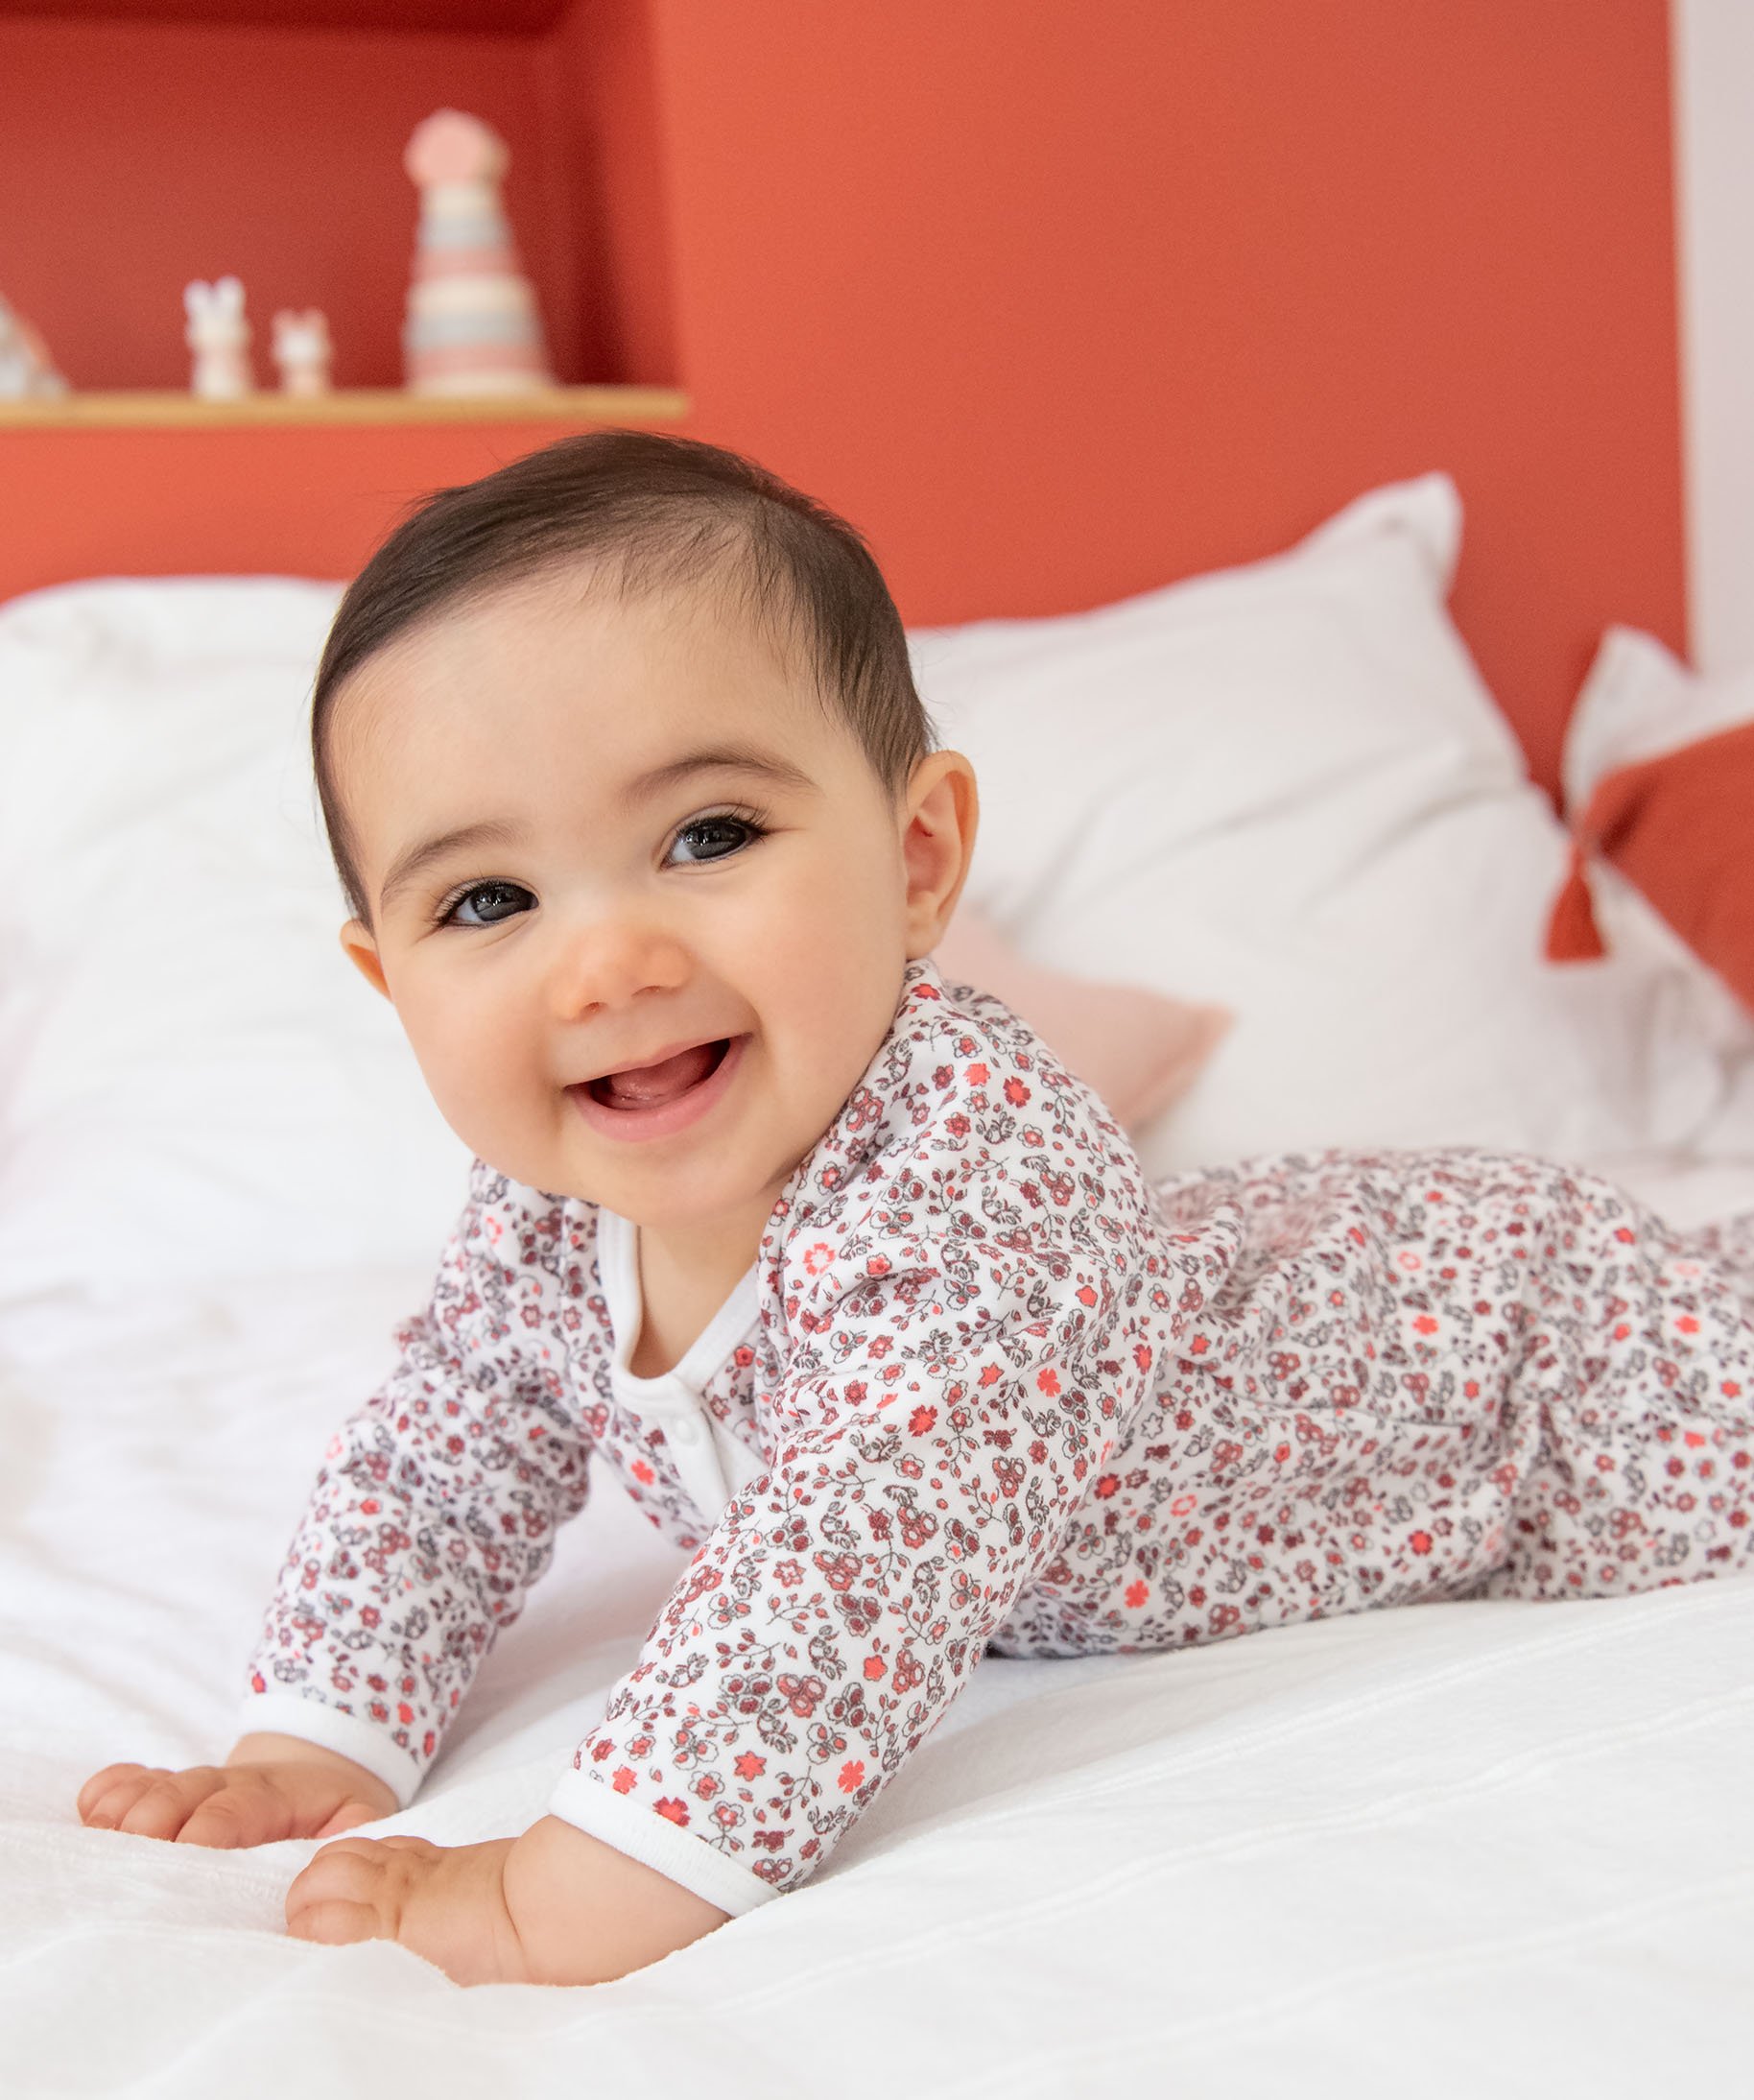 Les pyjamas pour bébés de 0 à 3 mois